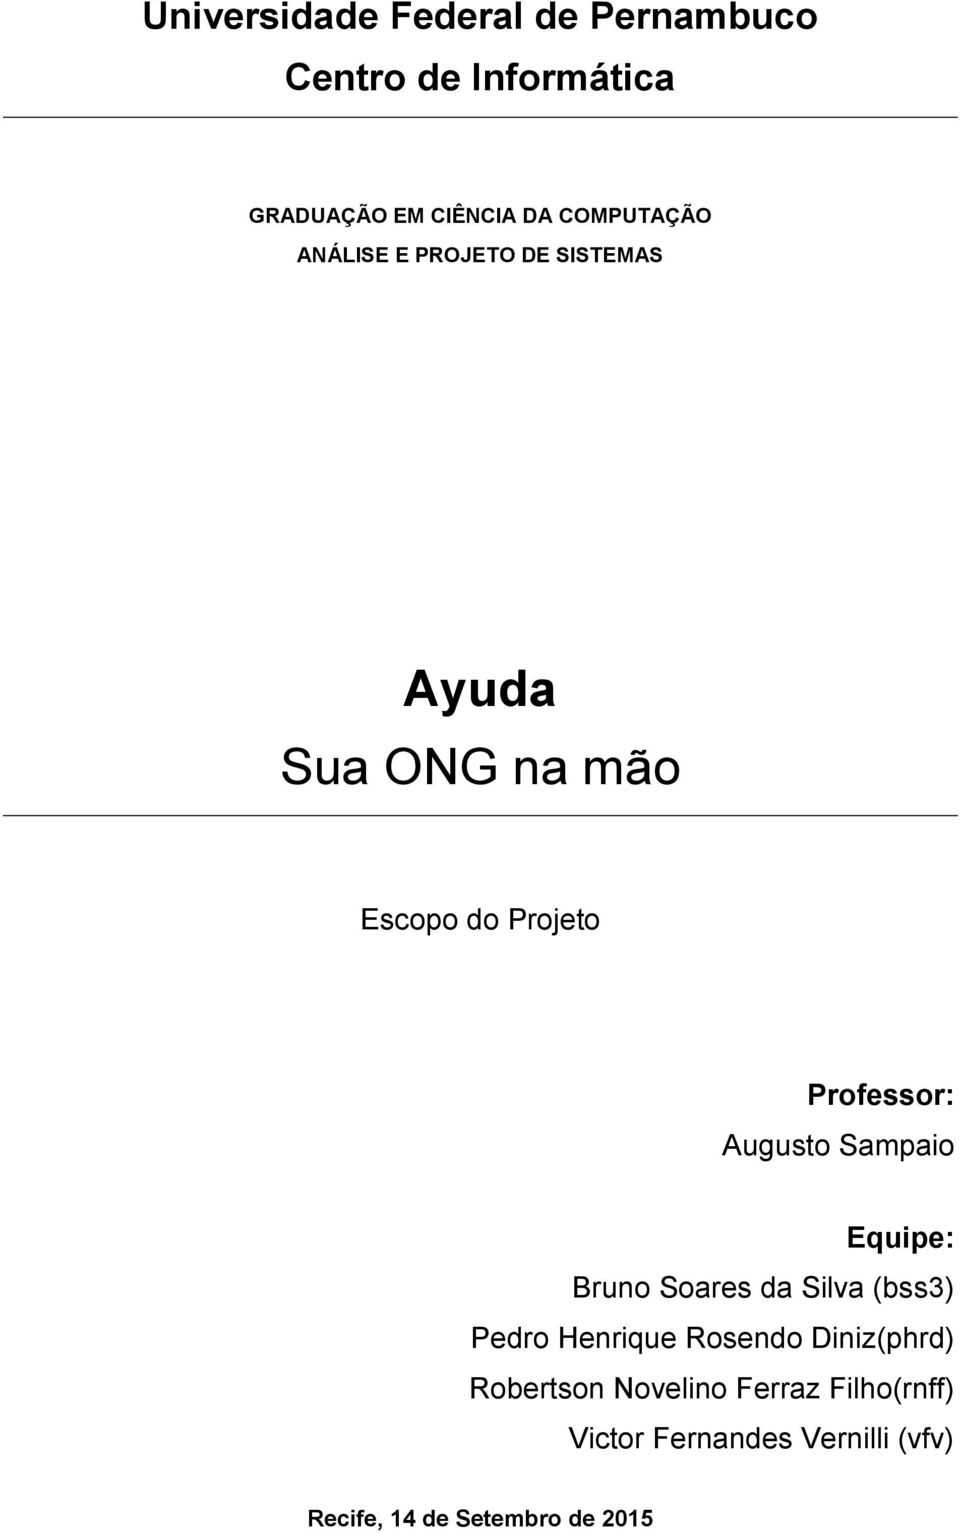 Professor: Augusto Sampaio Equipe: Bruno Soares da Silva (bss3) Pedro Henrique Rosendo